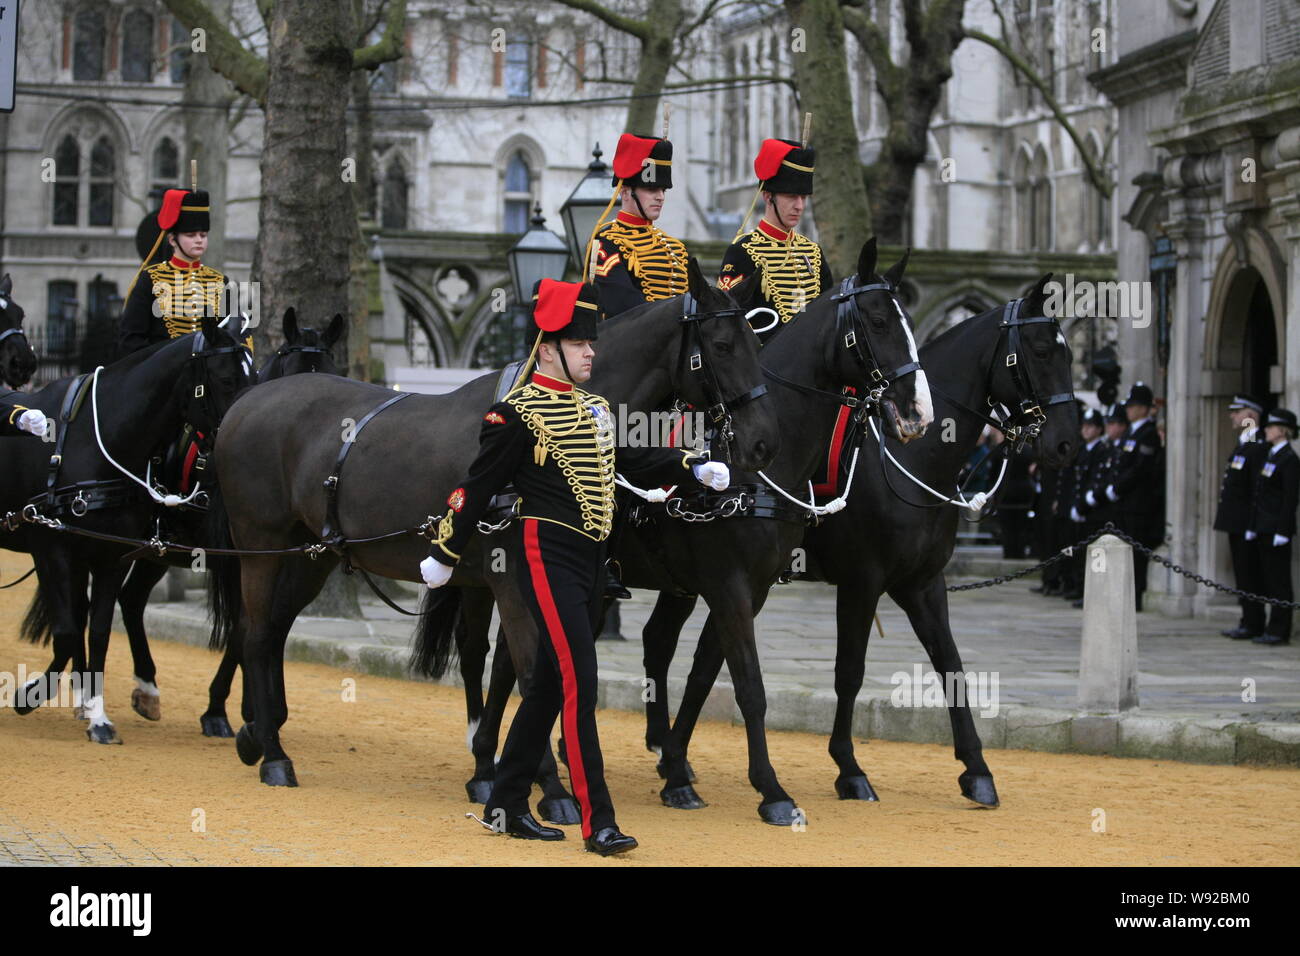 Les gardes d'honneur monter à cheval pour escorter le cercueil de l'ancien Premier ministre britannique Margaret Thatcher durant sa cérémonie de funérailles à Londres, Royaume-Uni, 17 AP Banque D'Images